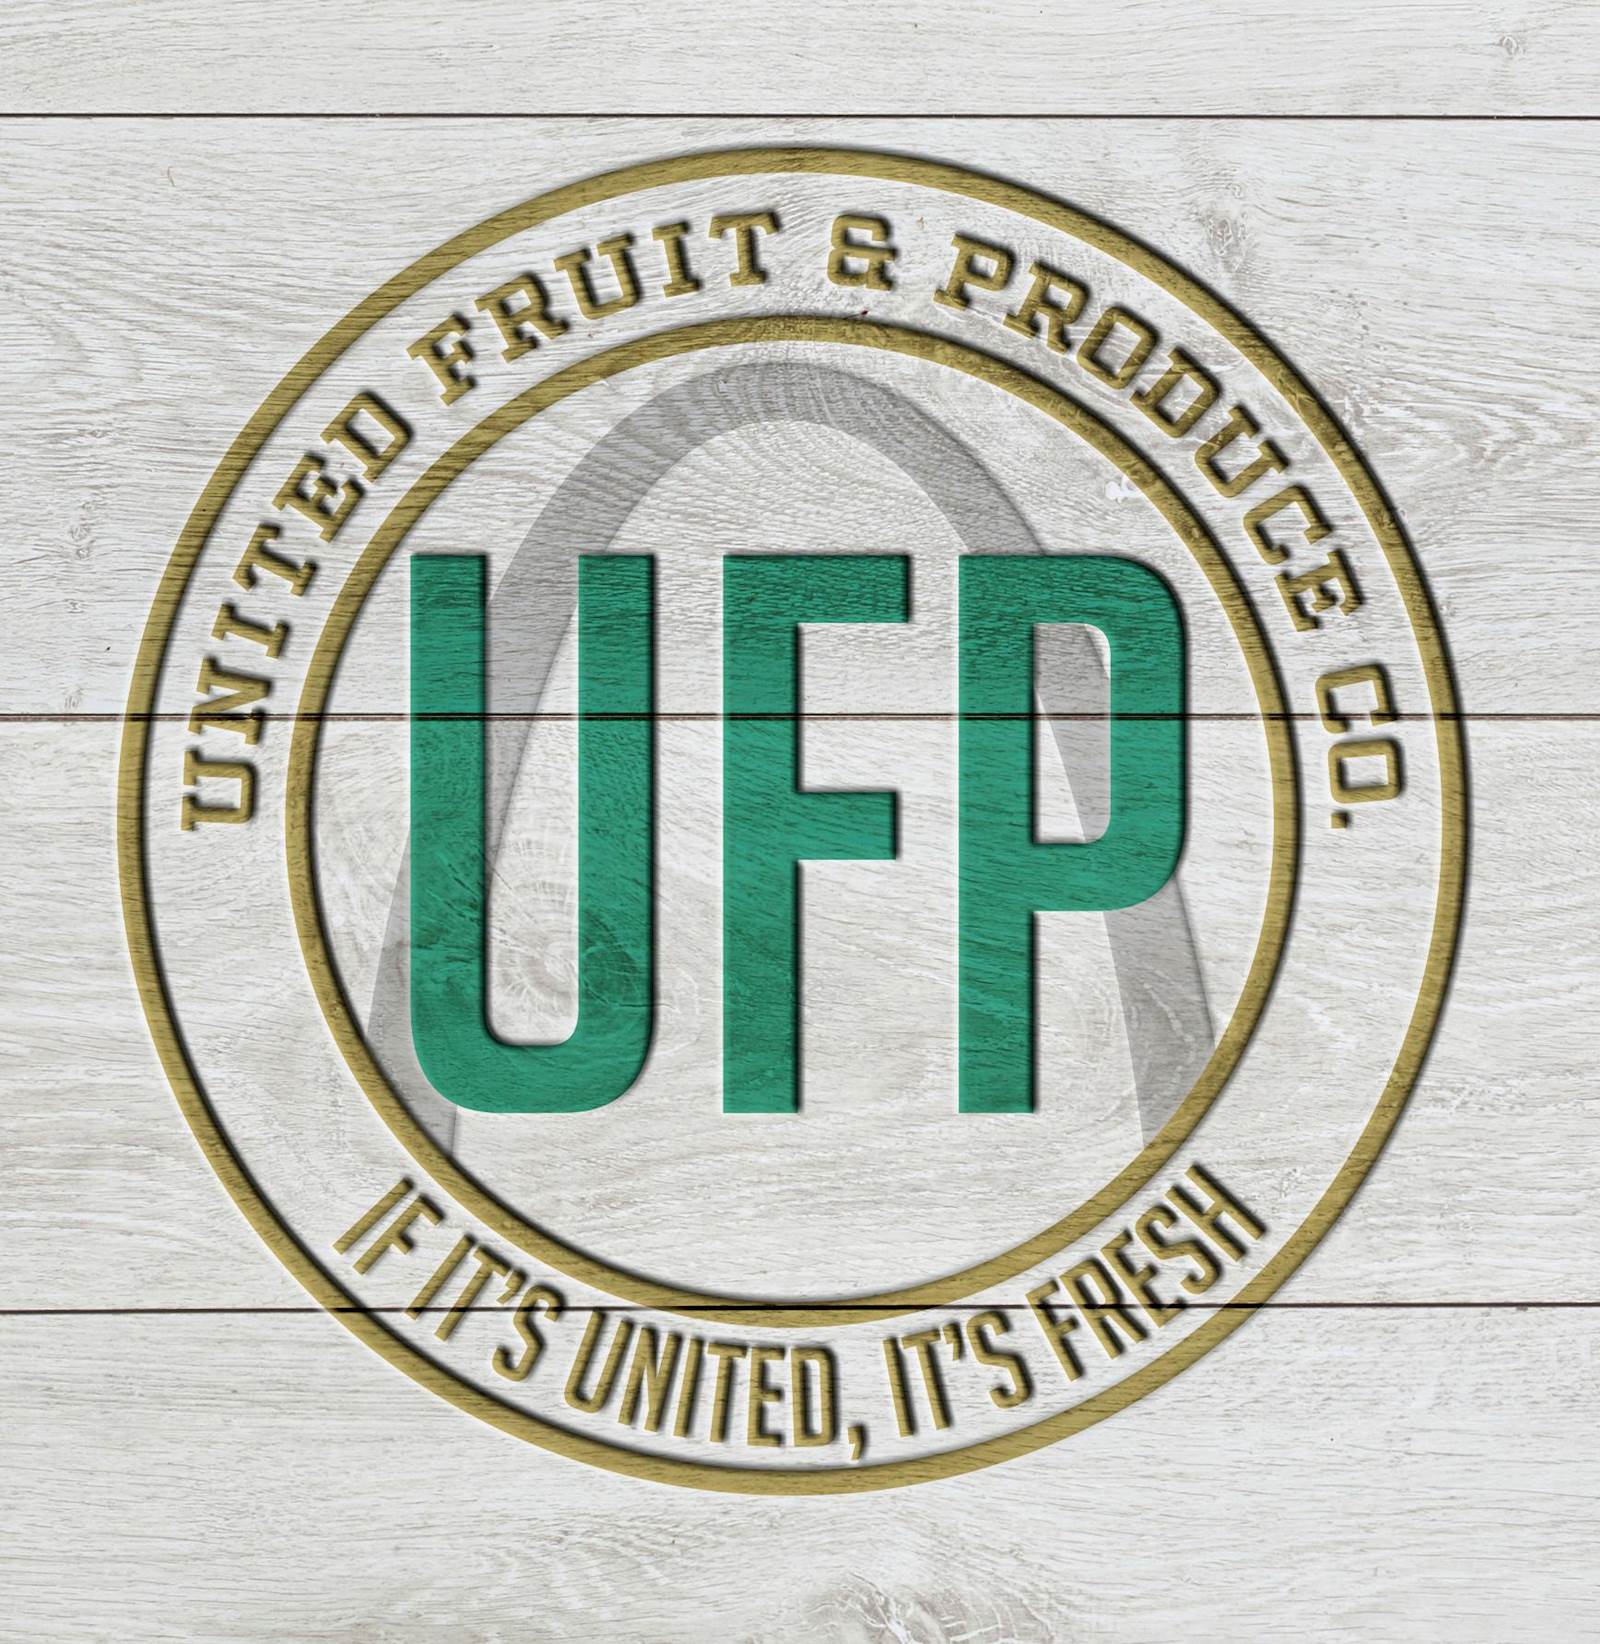 UFP logo